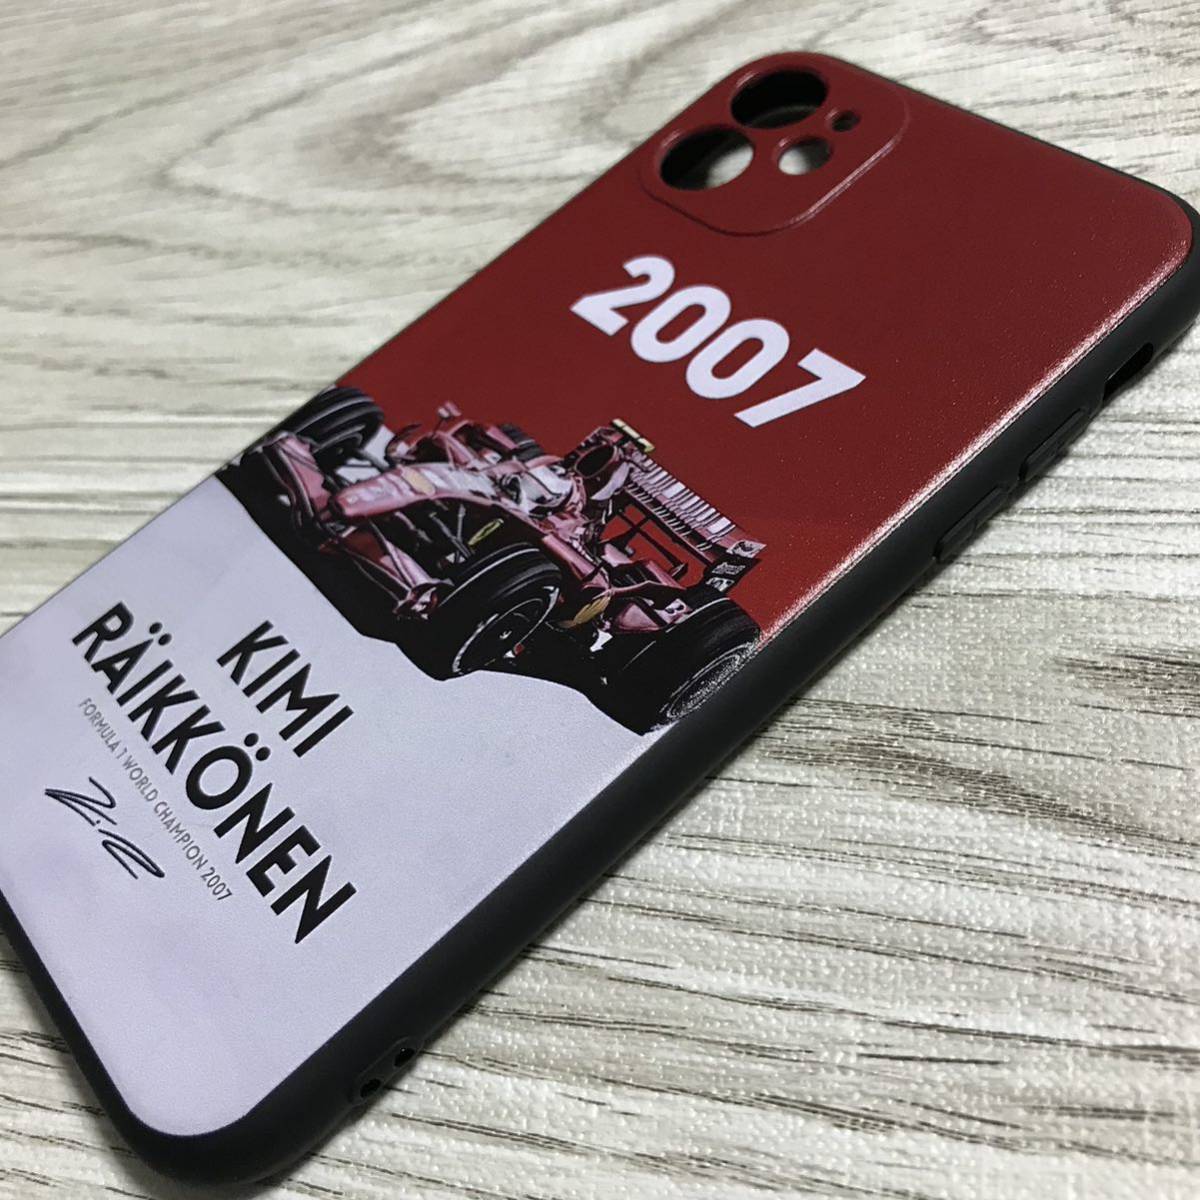  Kimi *lai коннектор n2007 world Champion iPhone 11 кейс F1 Ferrari Ferrari смартфон 